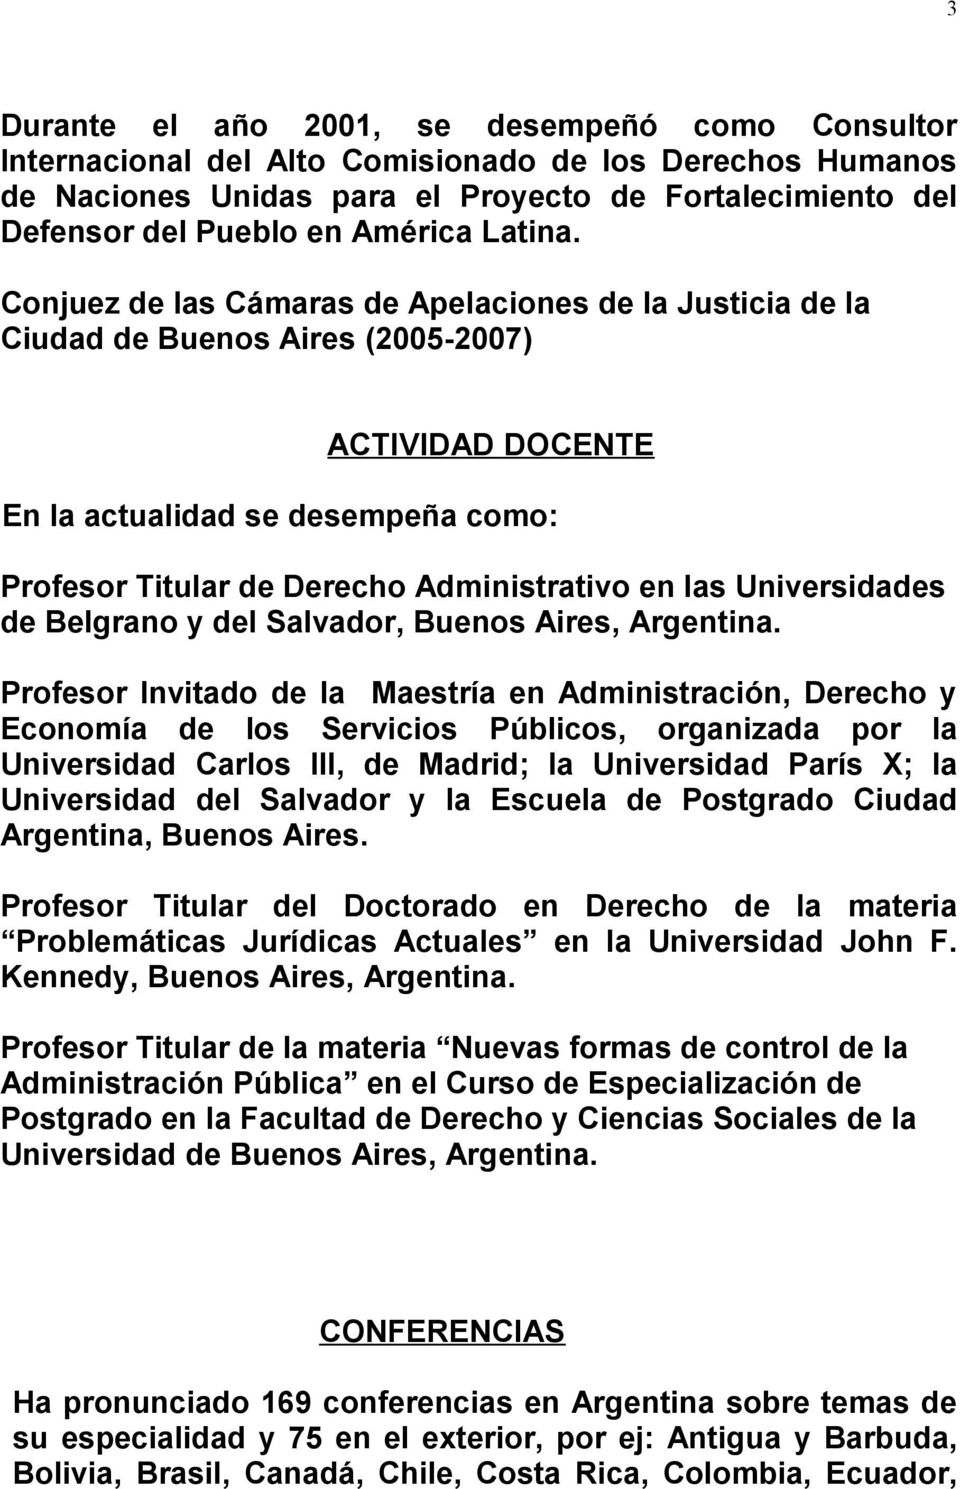 Conjuez de las Cámaras de Apelaciones de la Justicia de la Ciudad de Buenos Aires (2005-2007) ACTIVIDAD DOCENTE En la actualidad se desempeña como: Profesor Titular de Derecho Administrativo en las